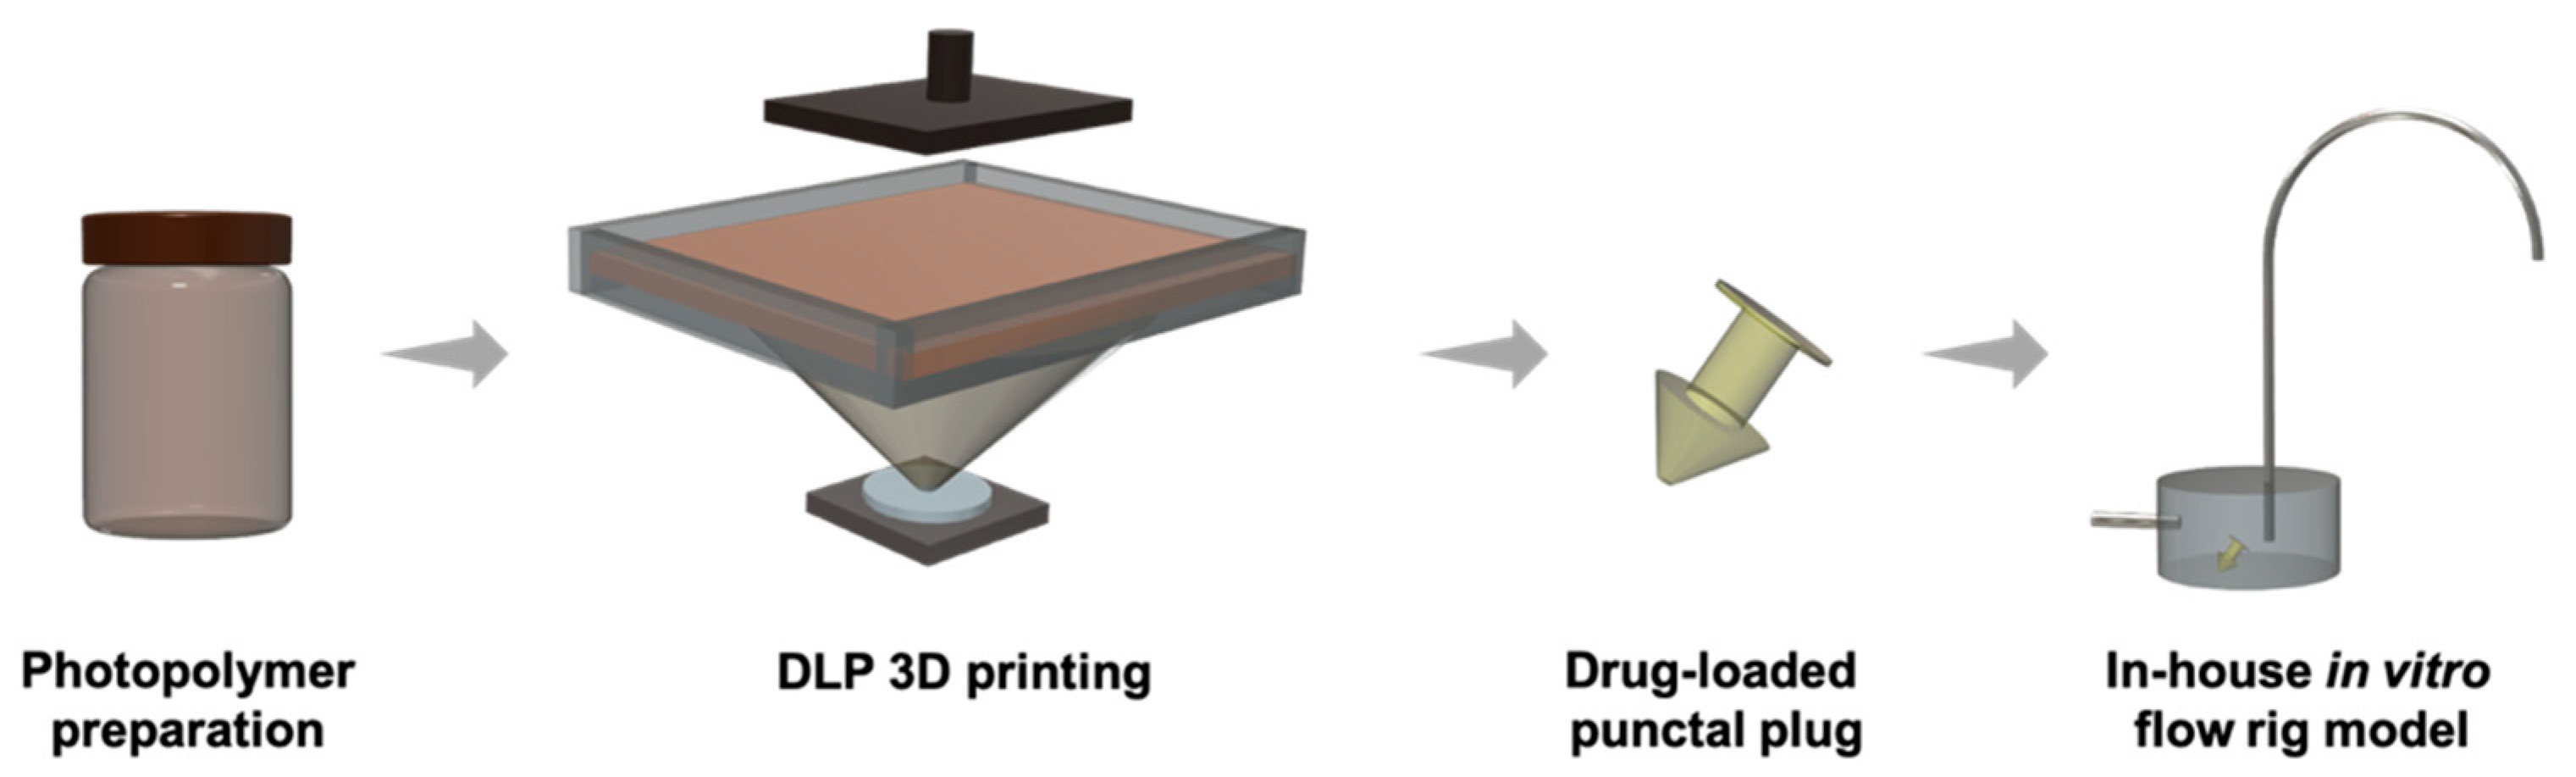 用于体外溶出研究的DLP 3D打印工艺和内部流动钻机模型。通过MDPI形象。